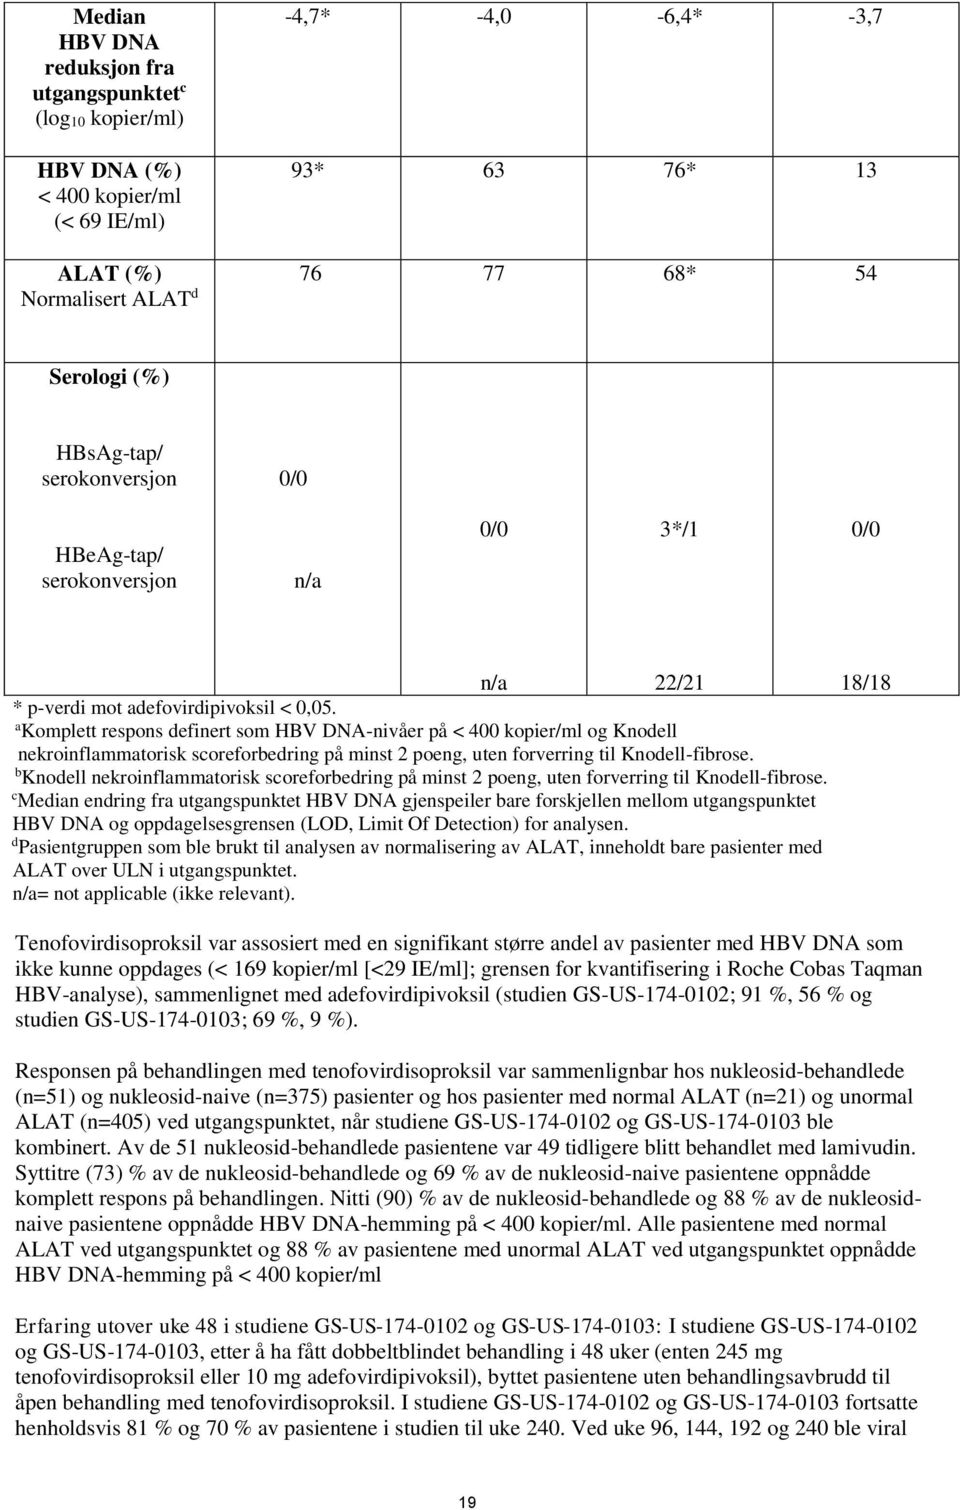 a Komplett respons definert som HBV DNA-nivåer på < 400 kopier/ml og Knodell nekroinflammatorisk scoreforbedring på minst 2 poeng, uten forverring til Knodell-fibrose.